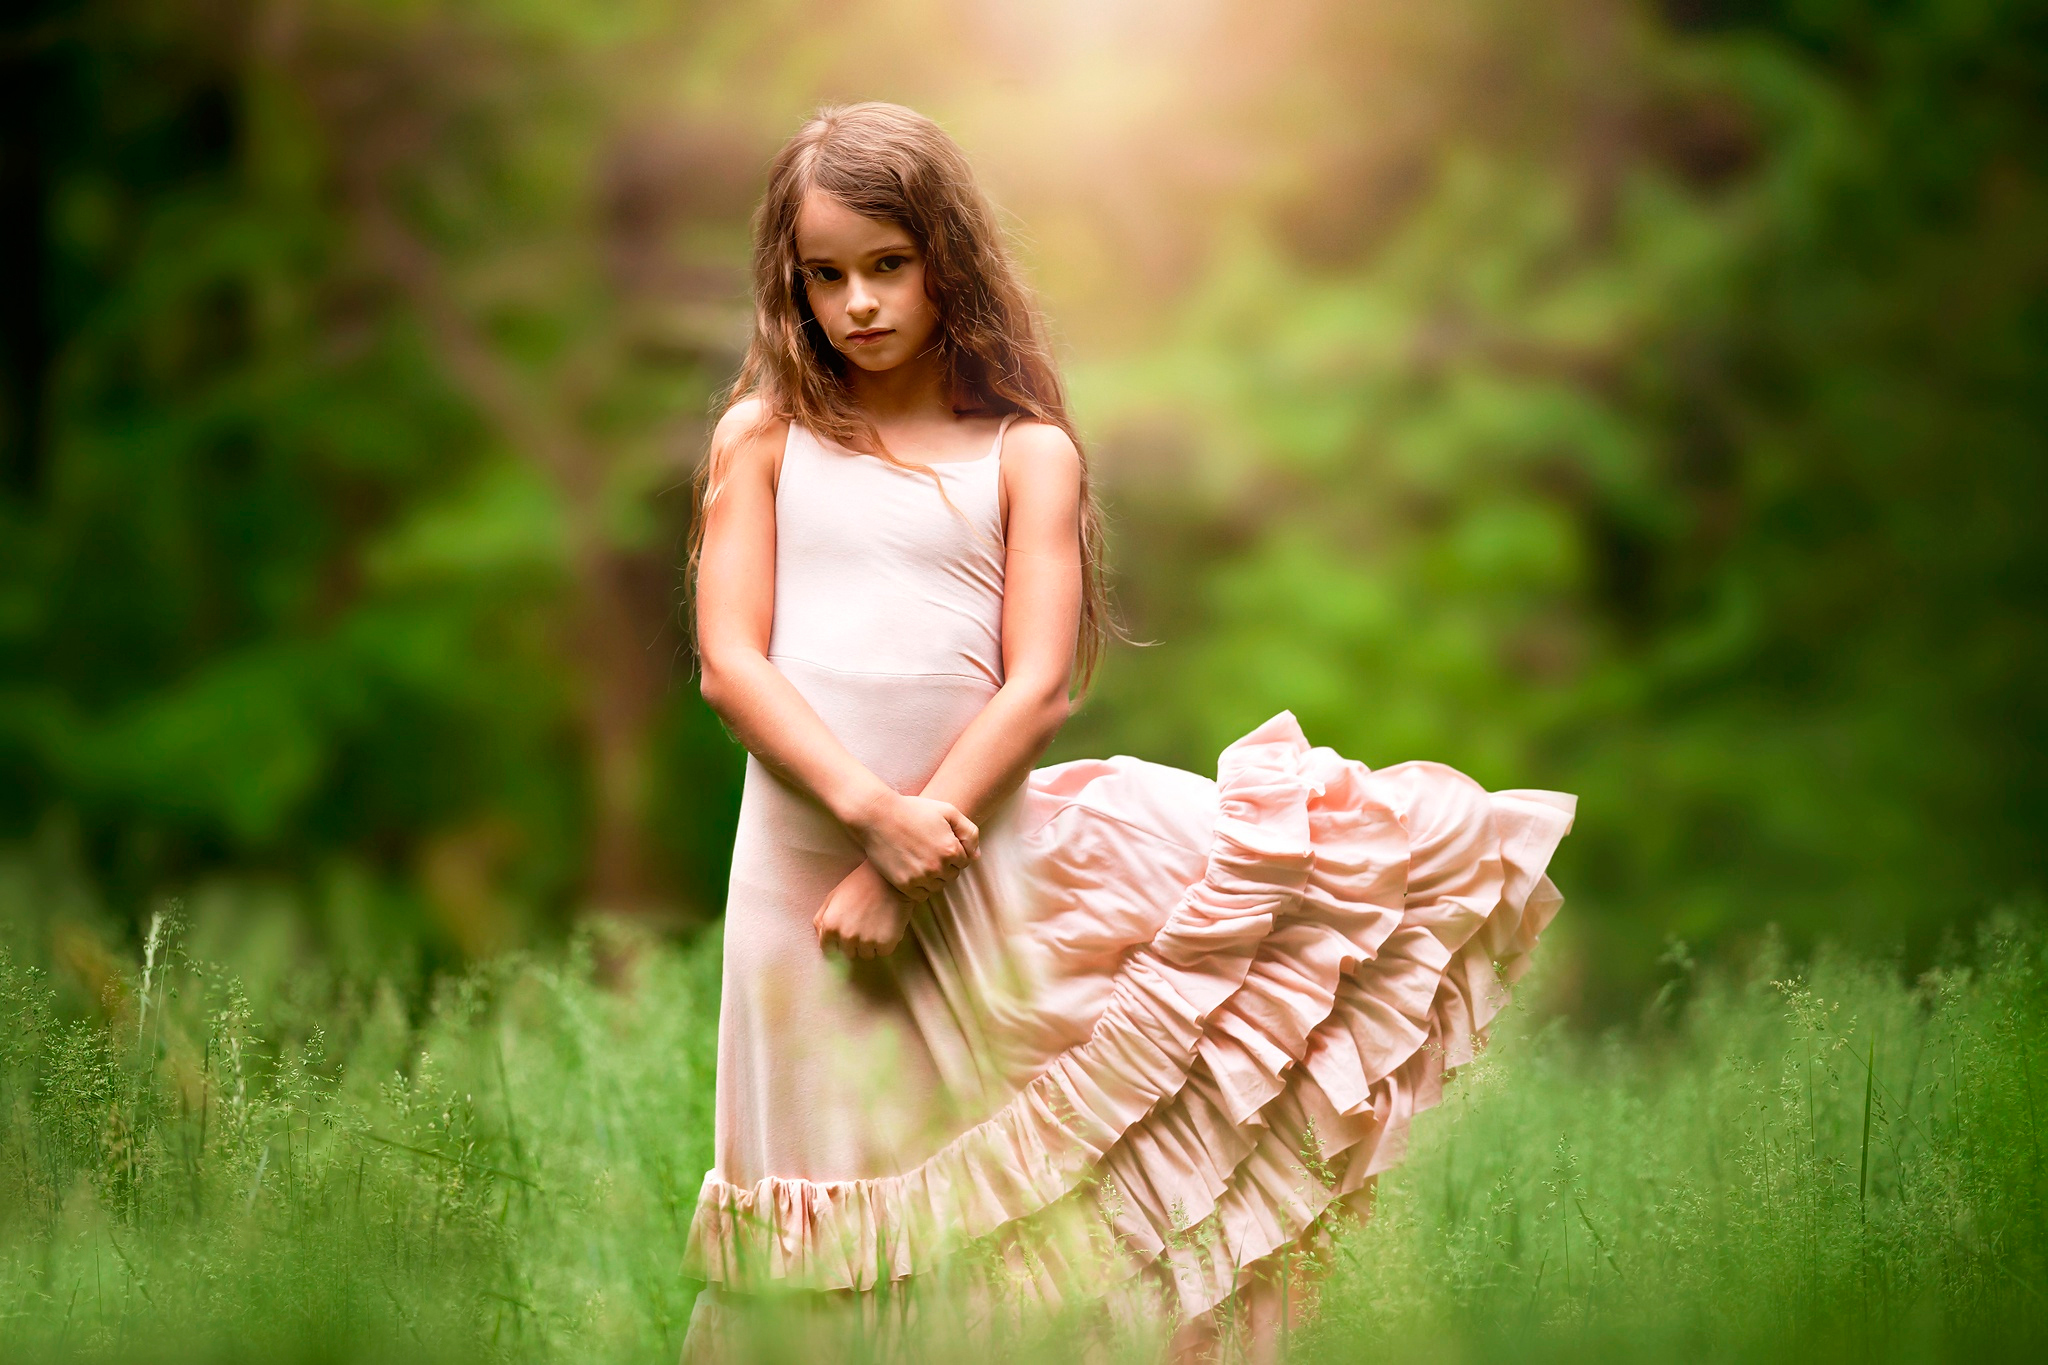 Little girls models. Платье для девочки. Красивые платья для девочек. Маленькая девочка природа. Девочка в платье на природе.